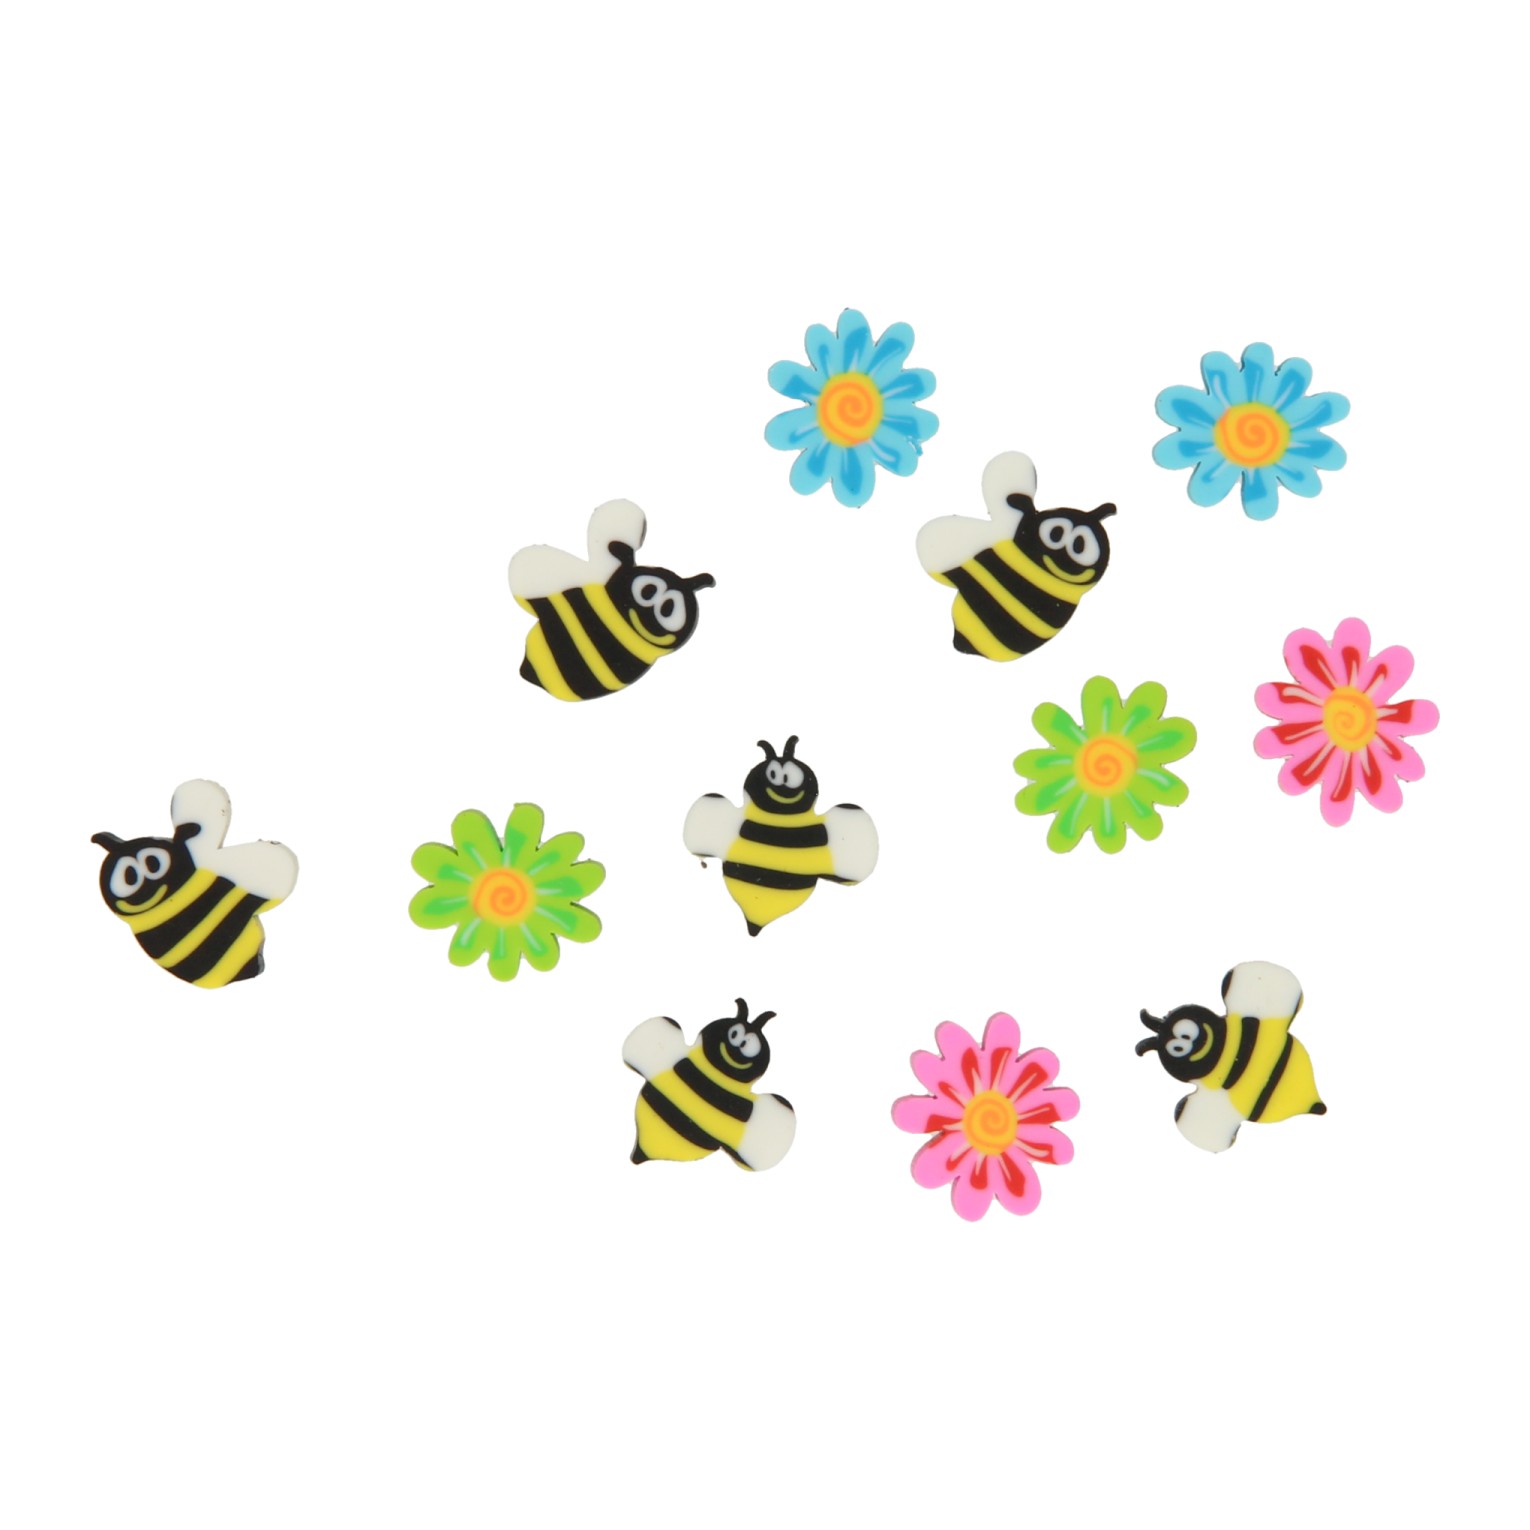 Mini gommes Bee Friends en verre, 12 pièces.